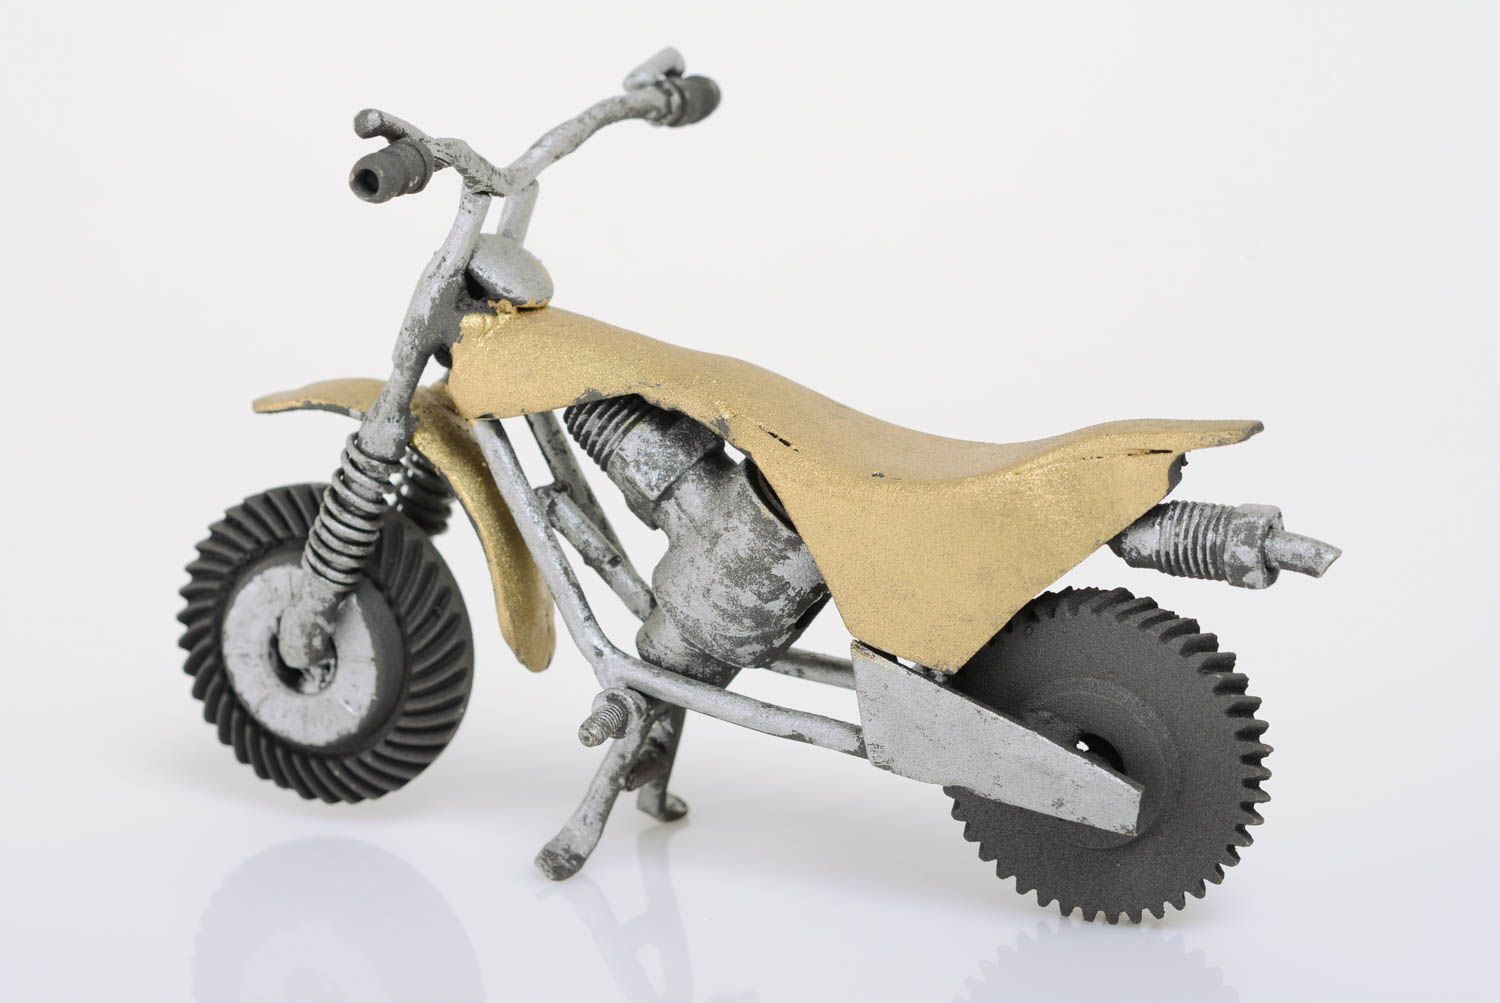 Металлическая статуэтка мотоцикла ручной работы в стиле техно арт красивая оригинальная фото 5